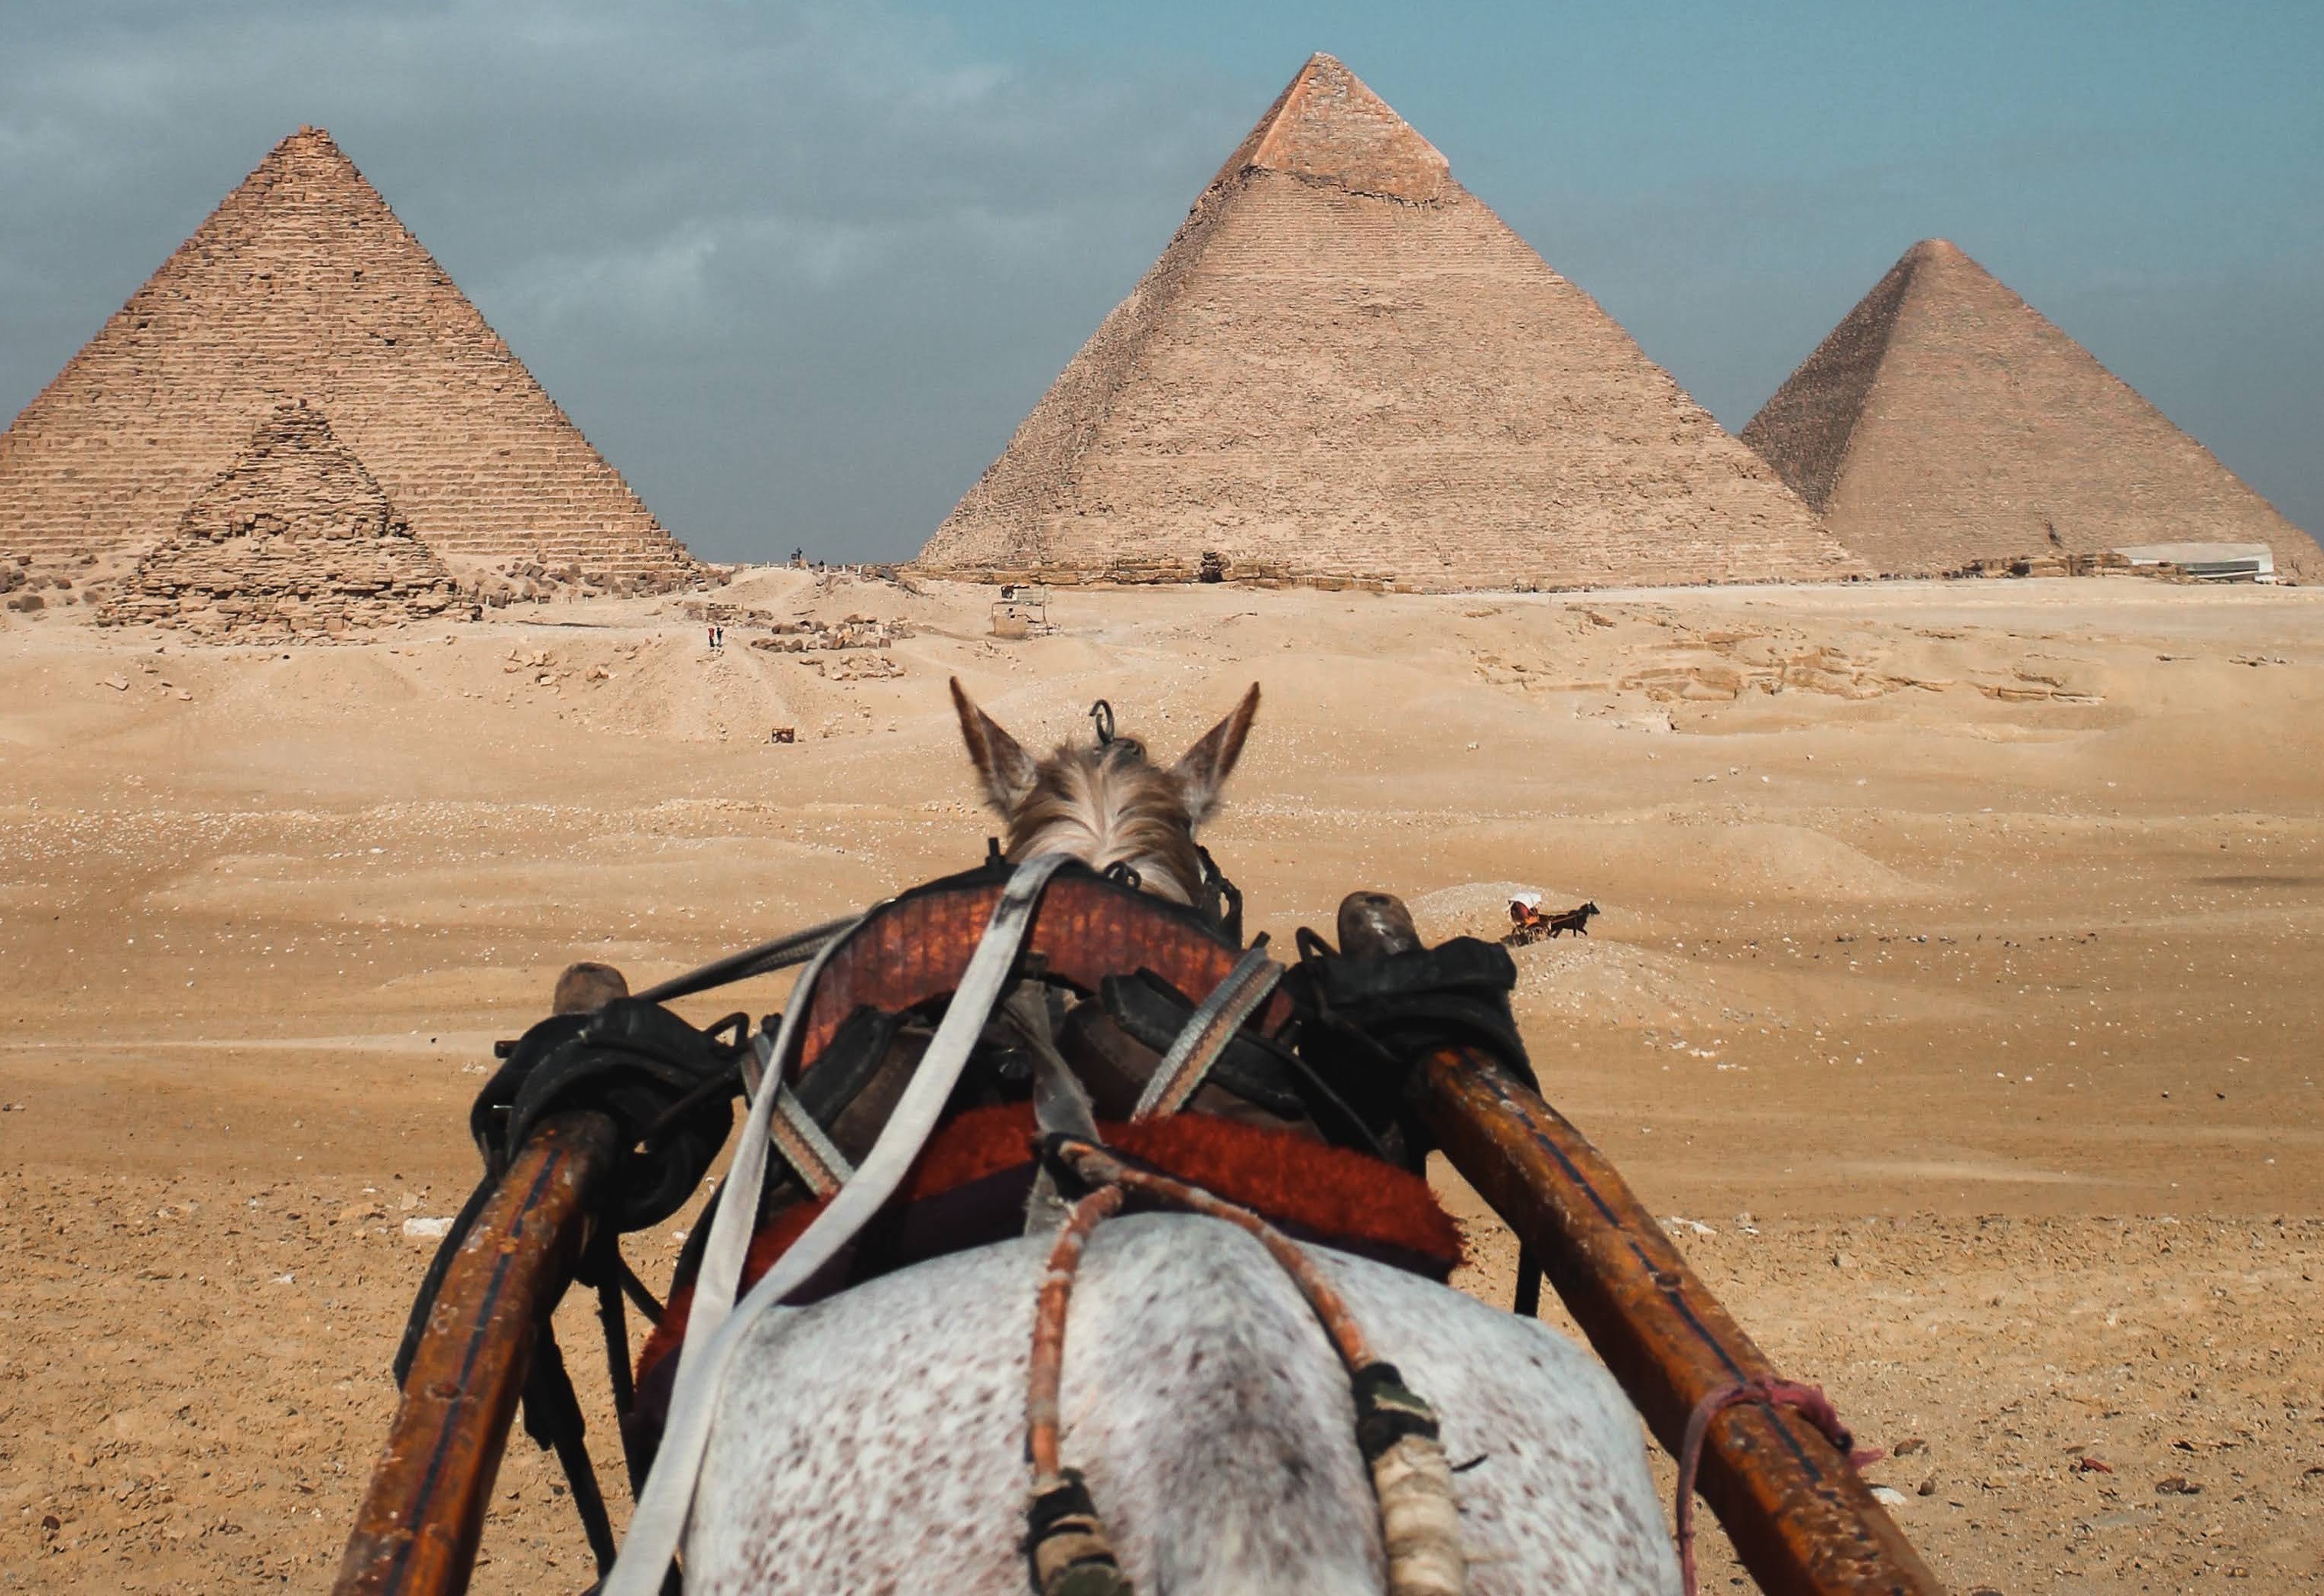 Казахстанский исследователь выдвинул теорию, что пирамиды возвели предки казахов